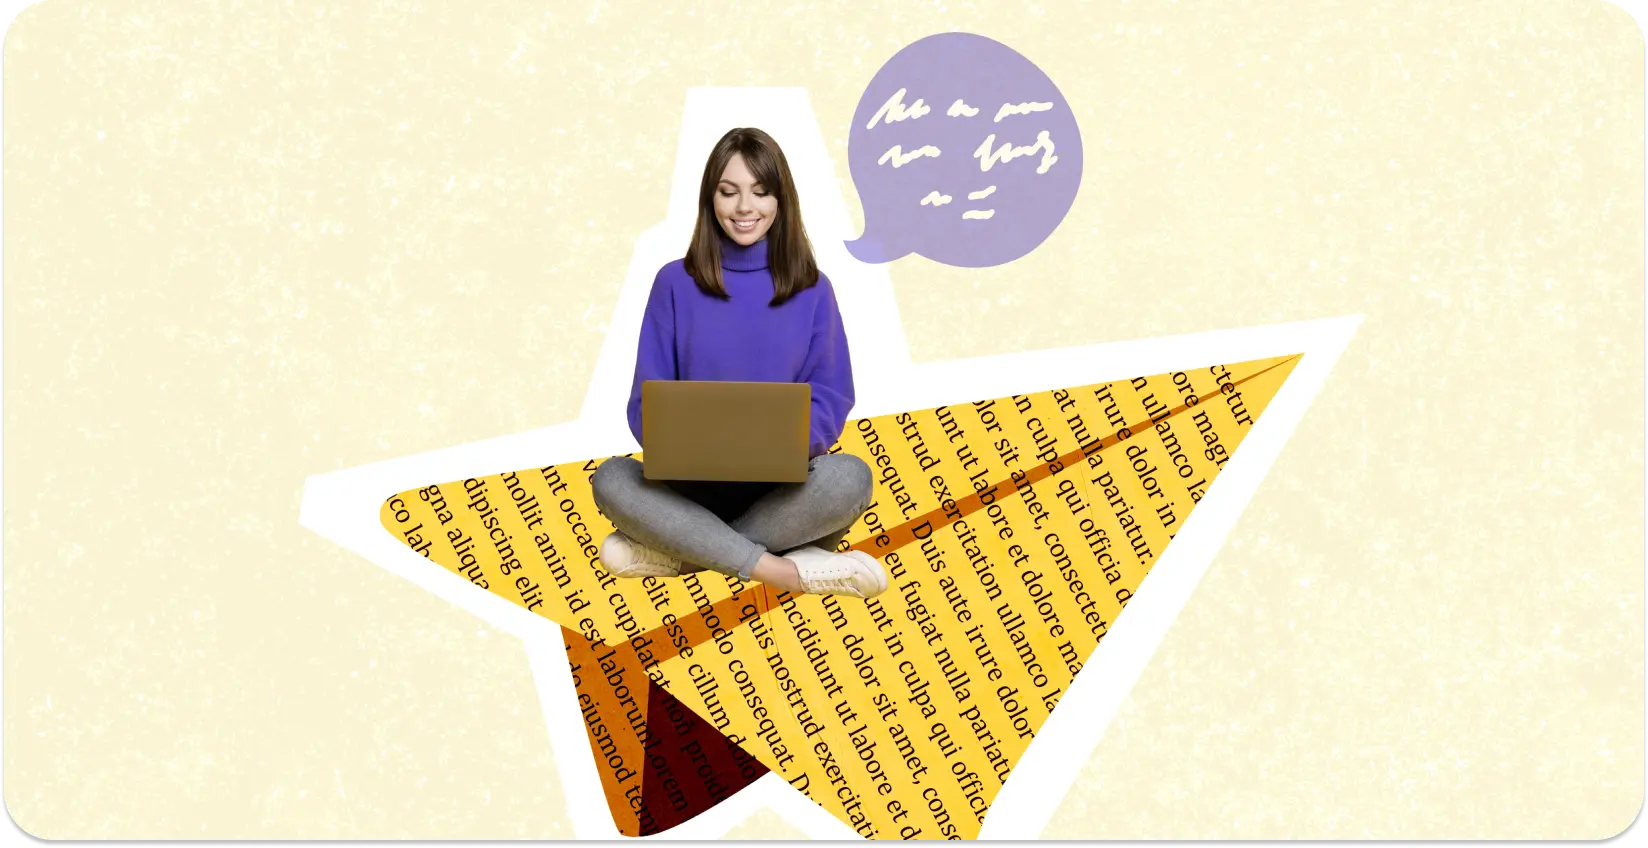 En forfatter sidder på en stjerneformet collage af tekstfyldte sider med en bærbar computer.